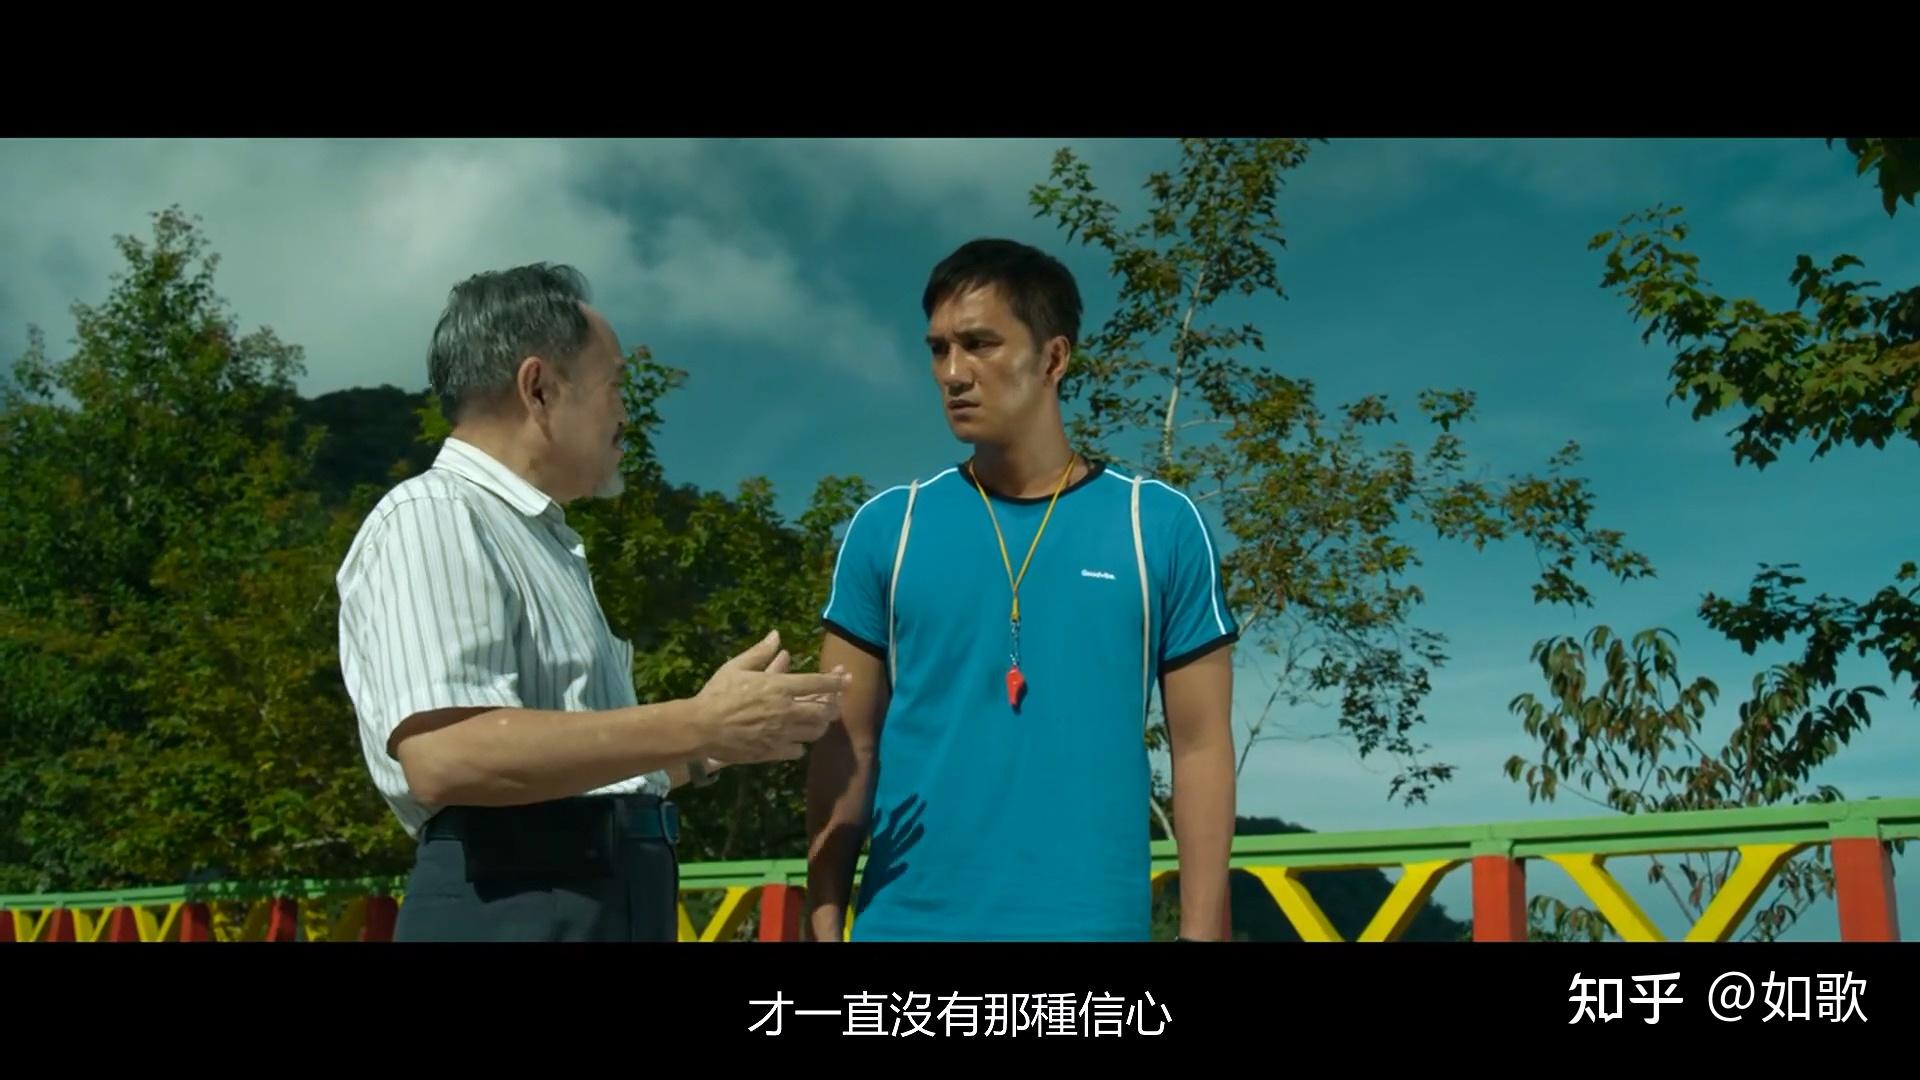 台湾电影听见歌再唱是一部改编自真人真事的励志影片